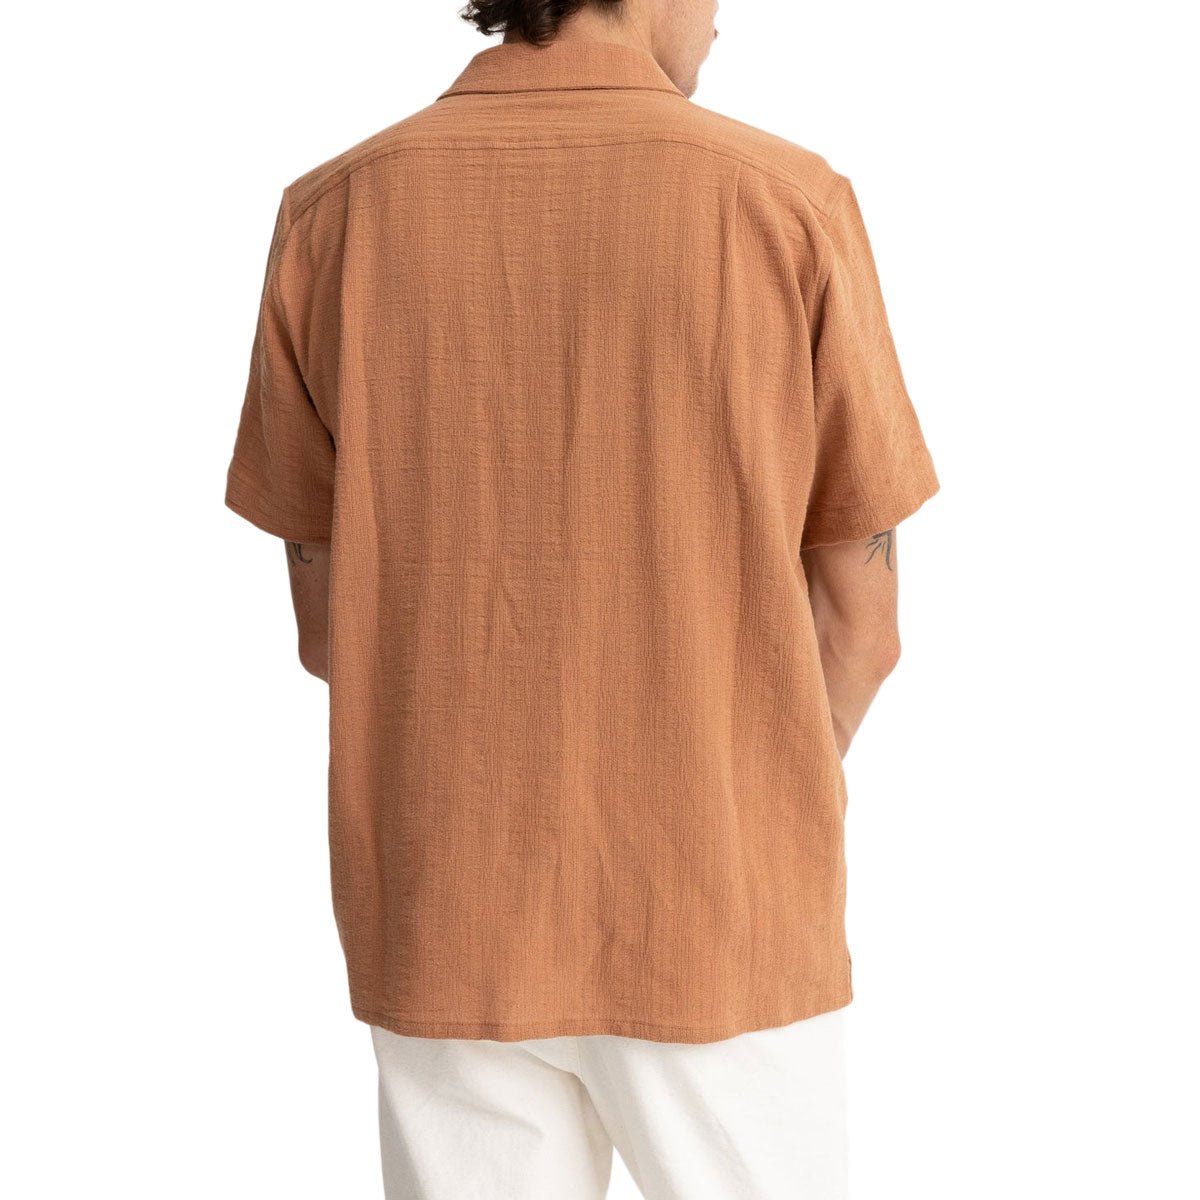 Rhythm Dobby Shirt - Tobacco image 2